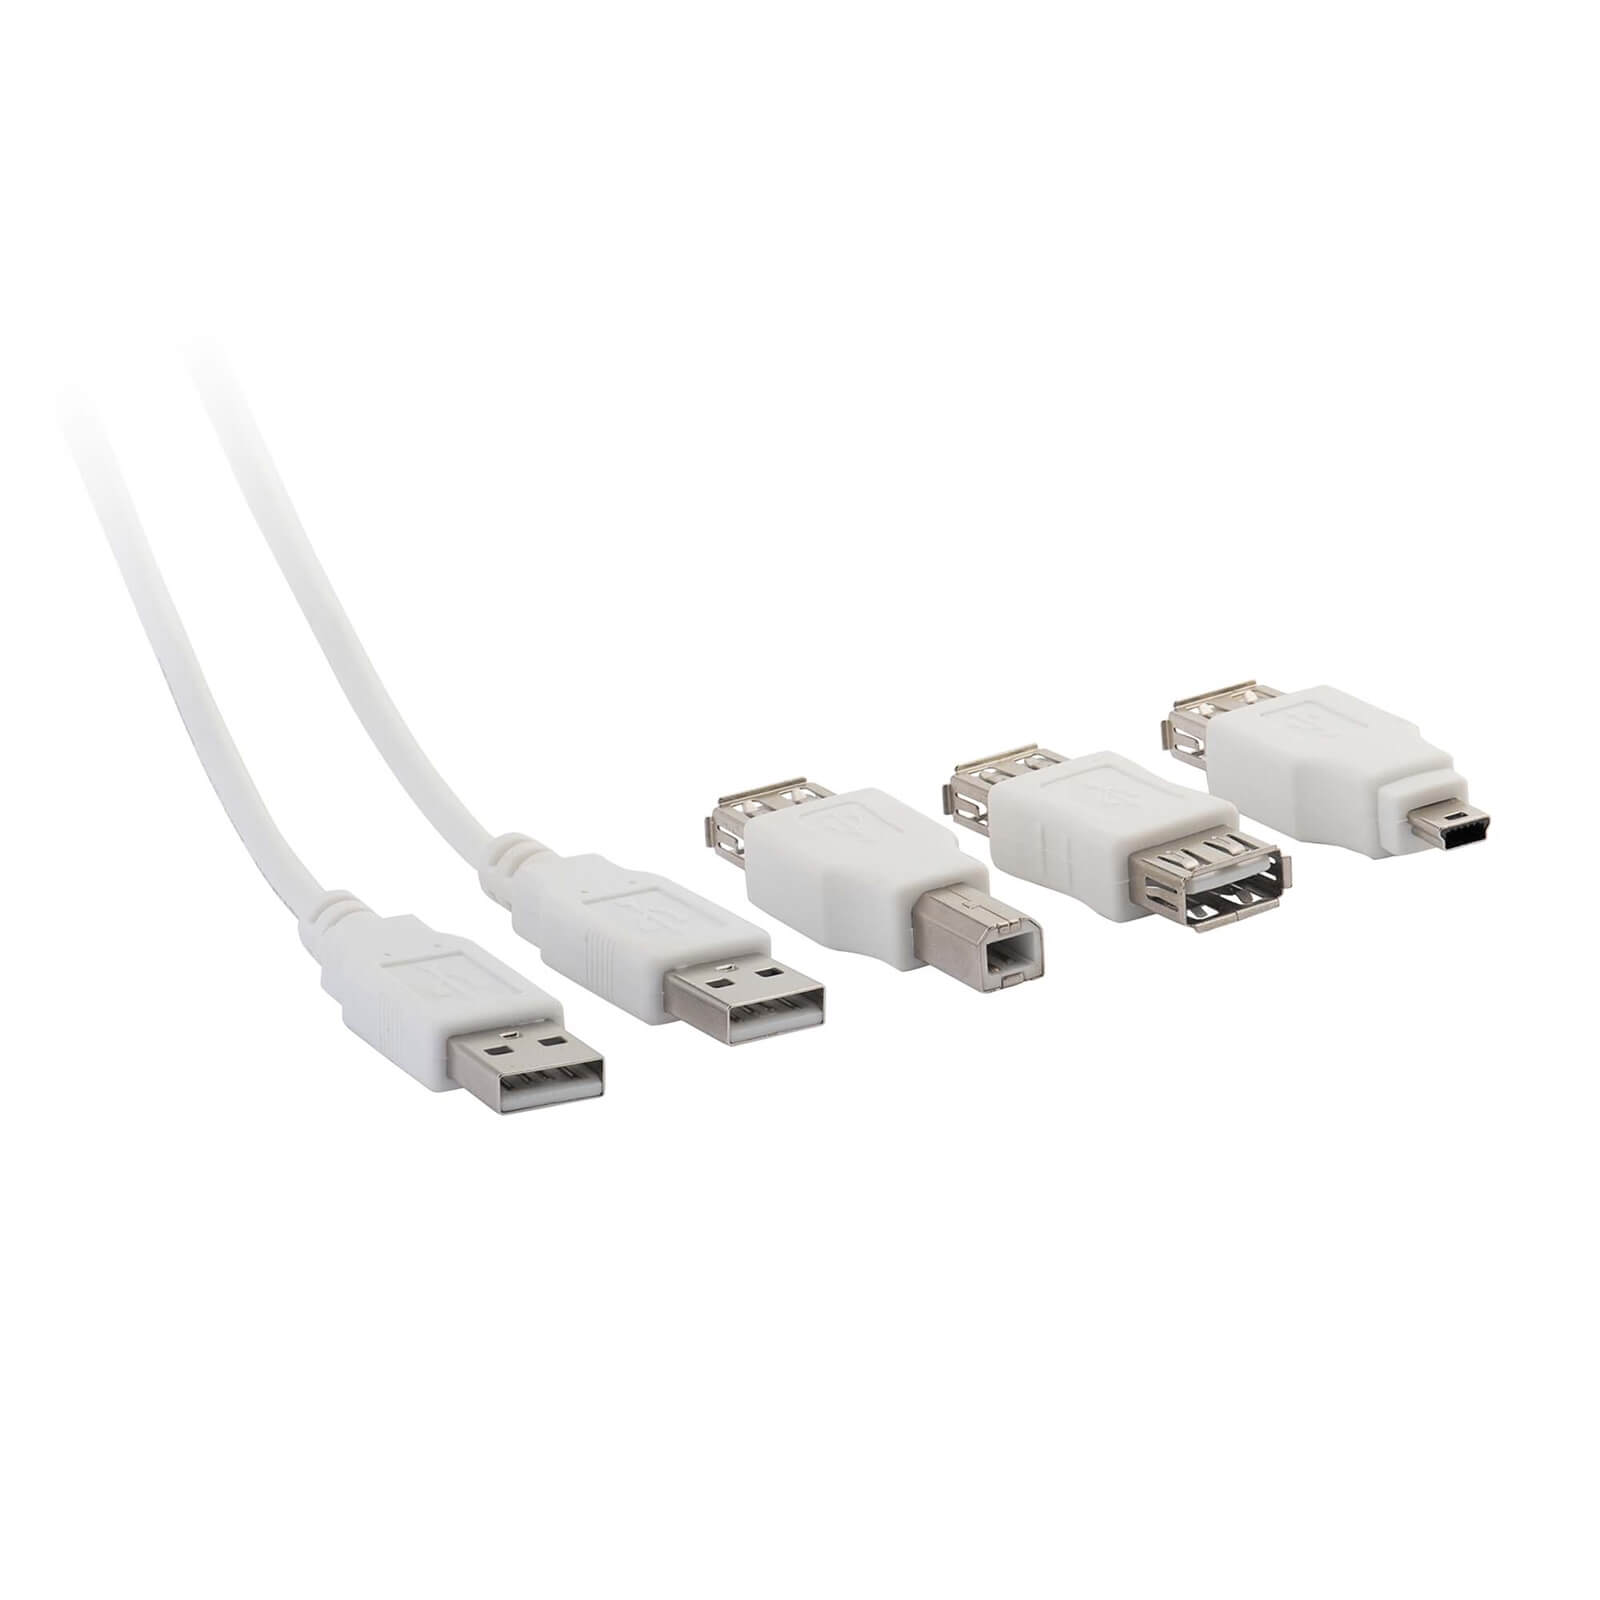 1.2m USB Cable & Adaptors